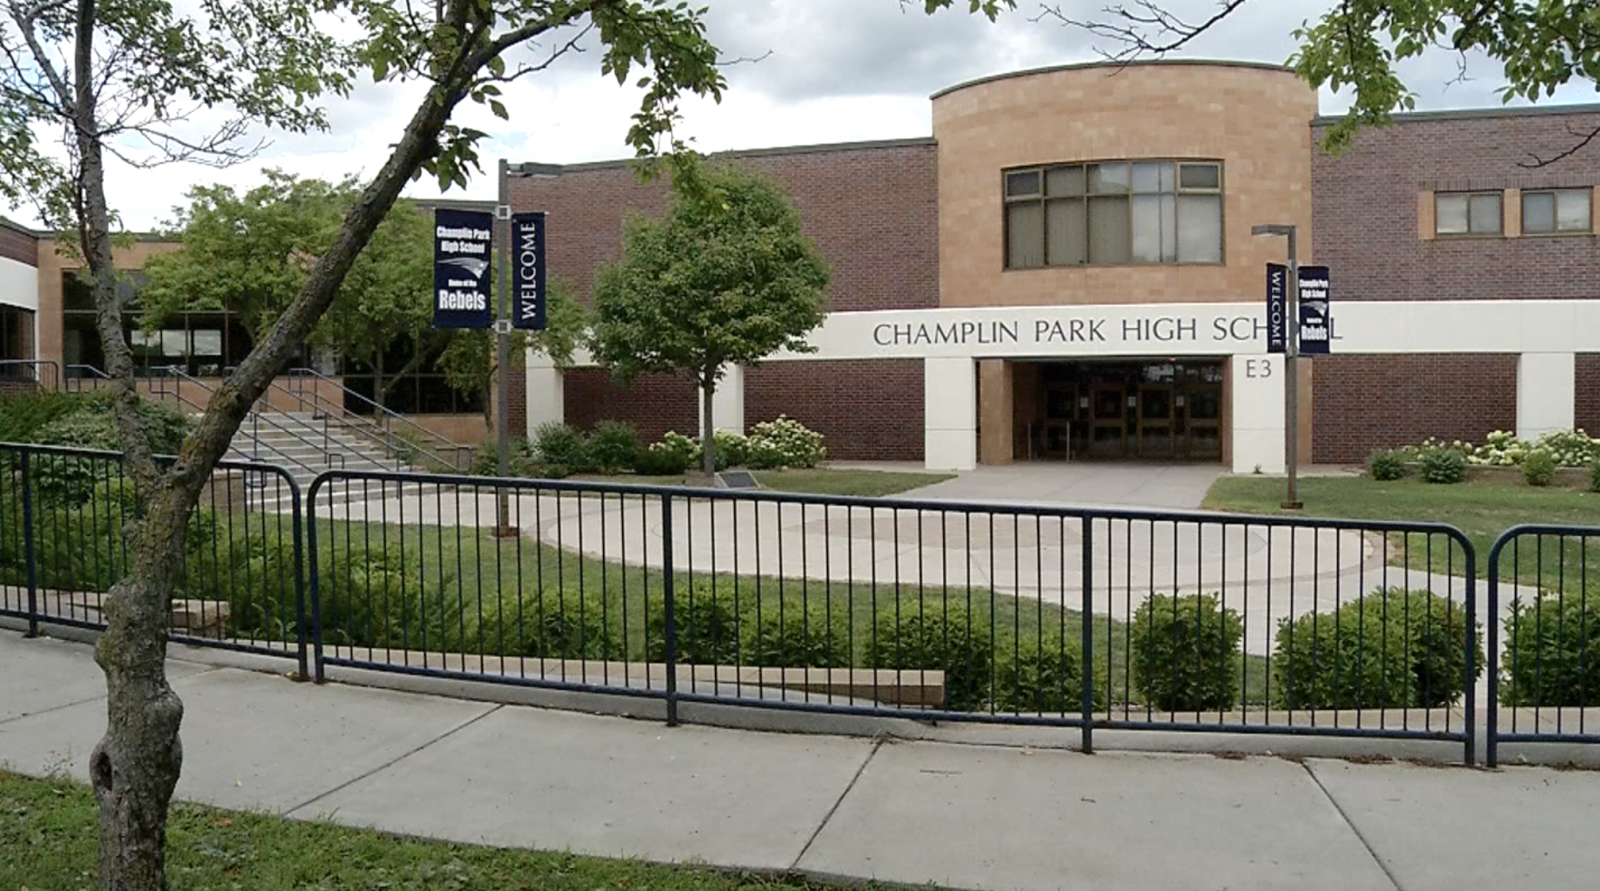 Champlin Park High School